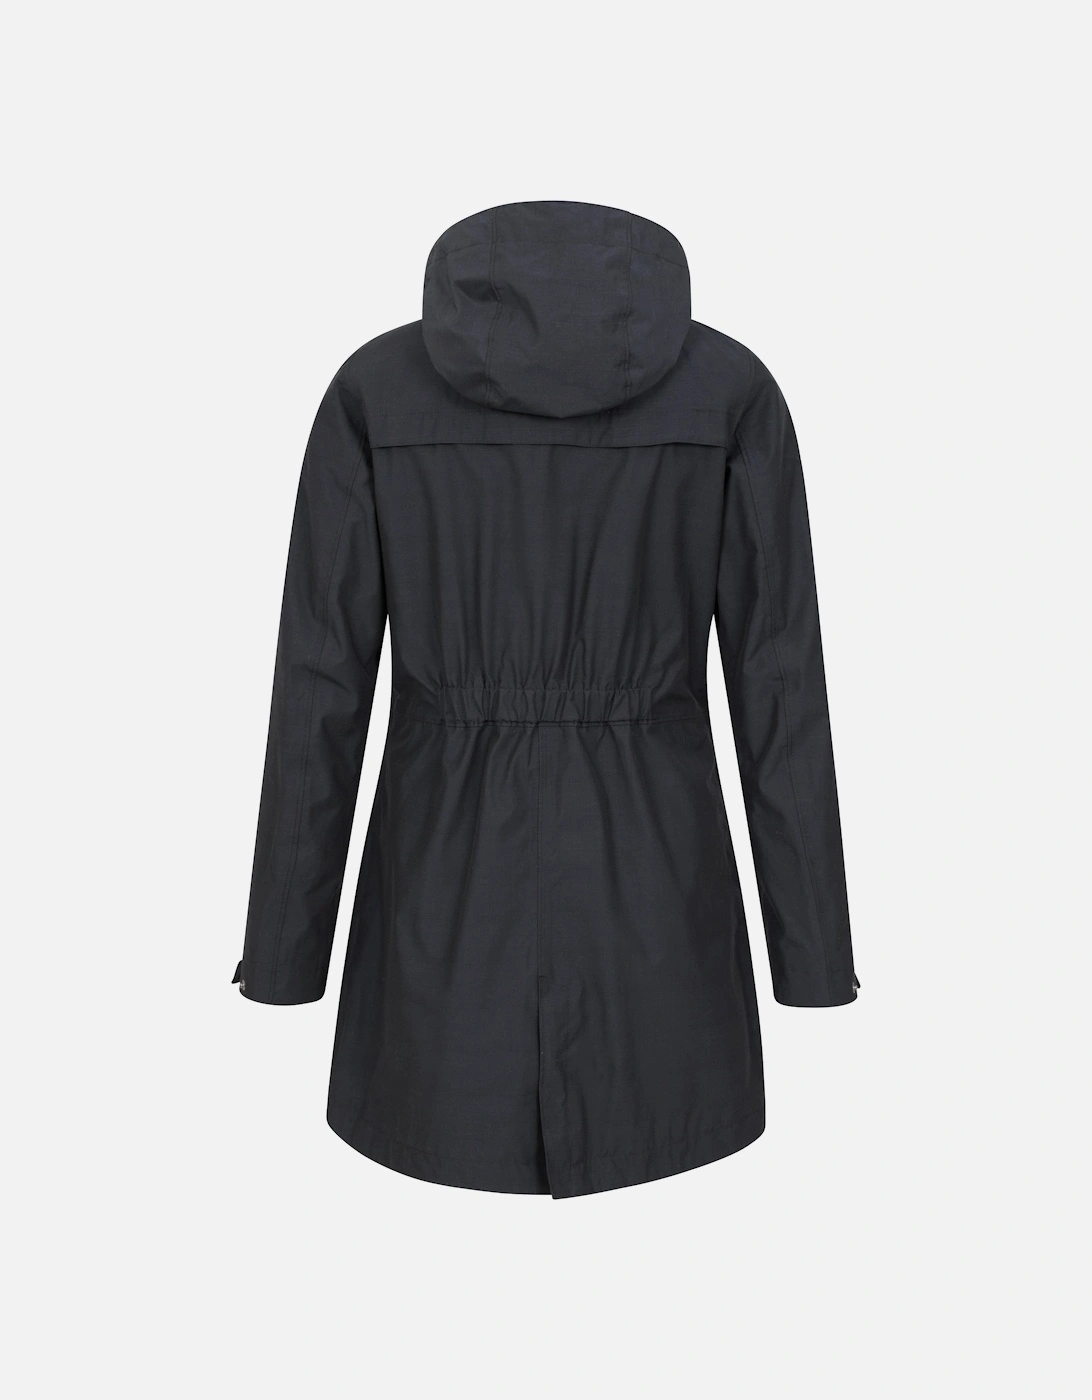 Womens/Ladies Cloudburst Textured Waterproof Jacket